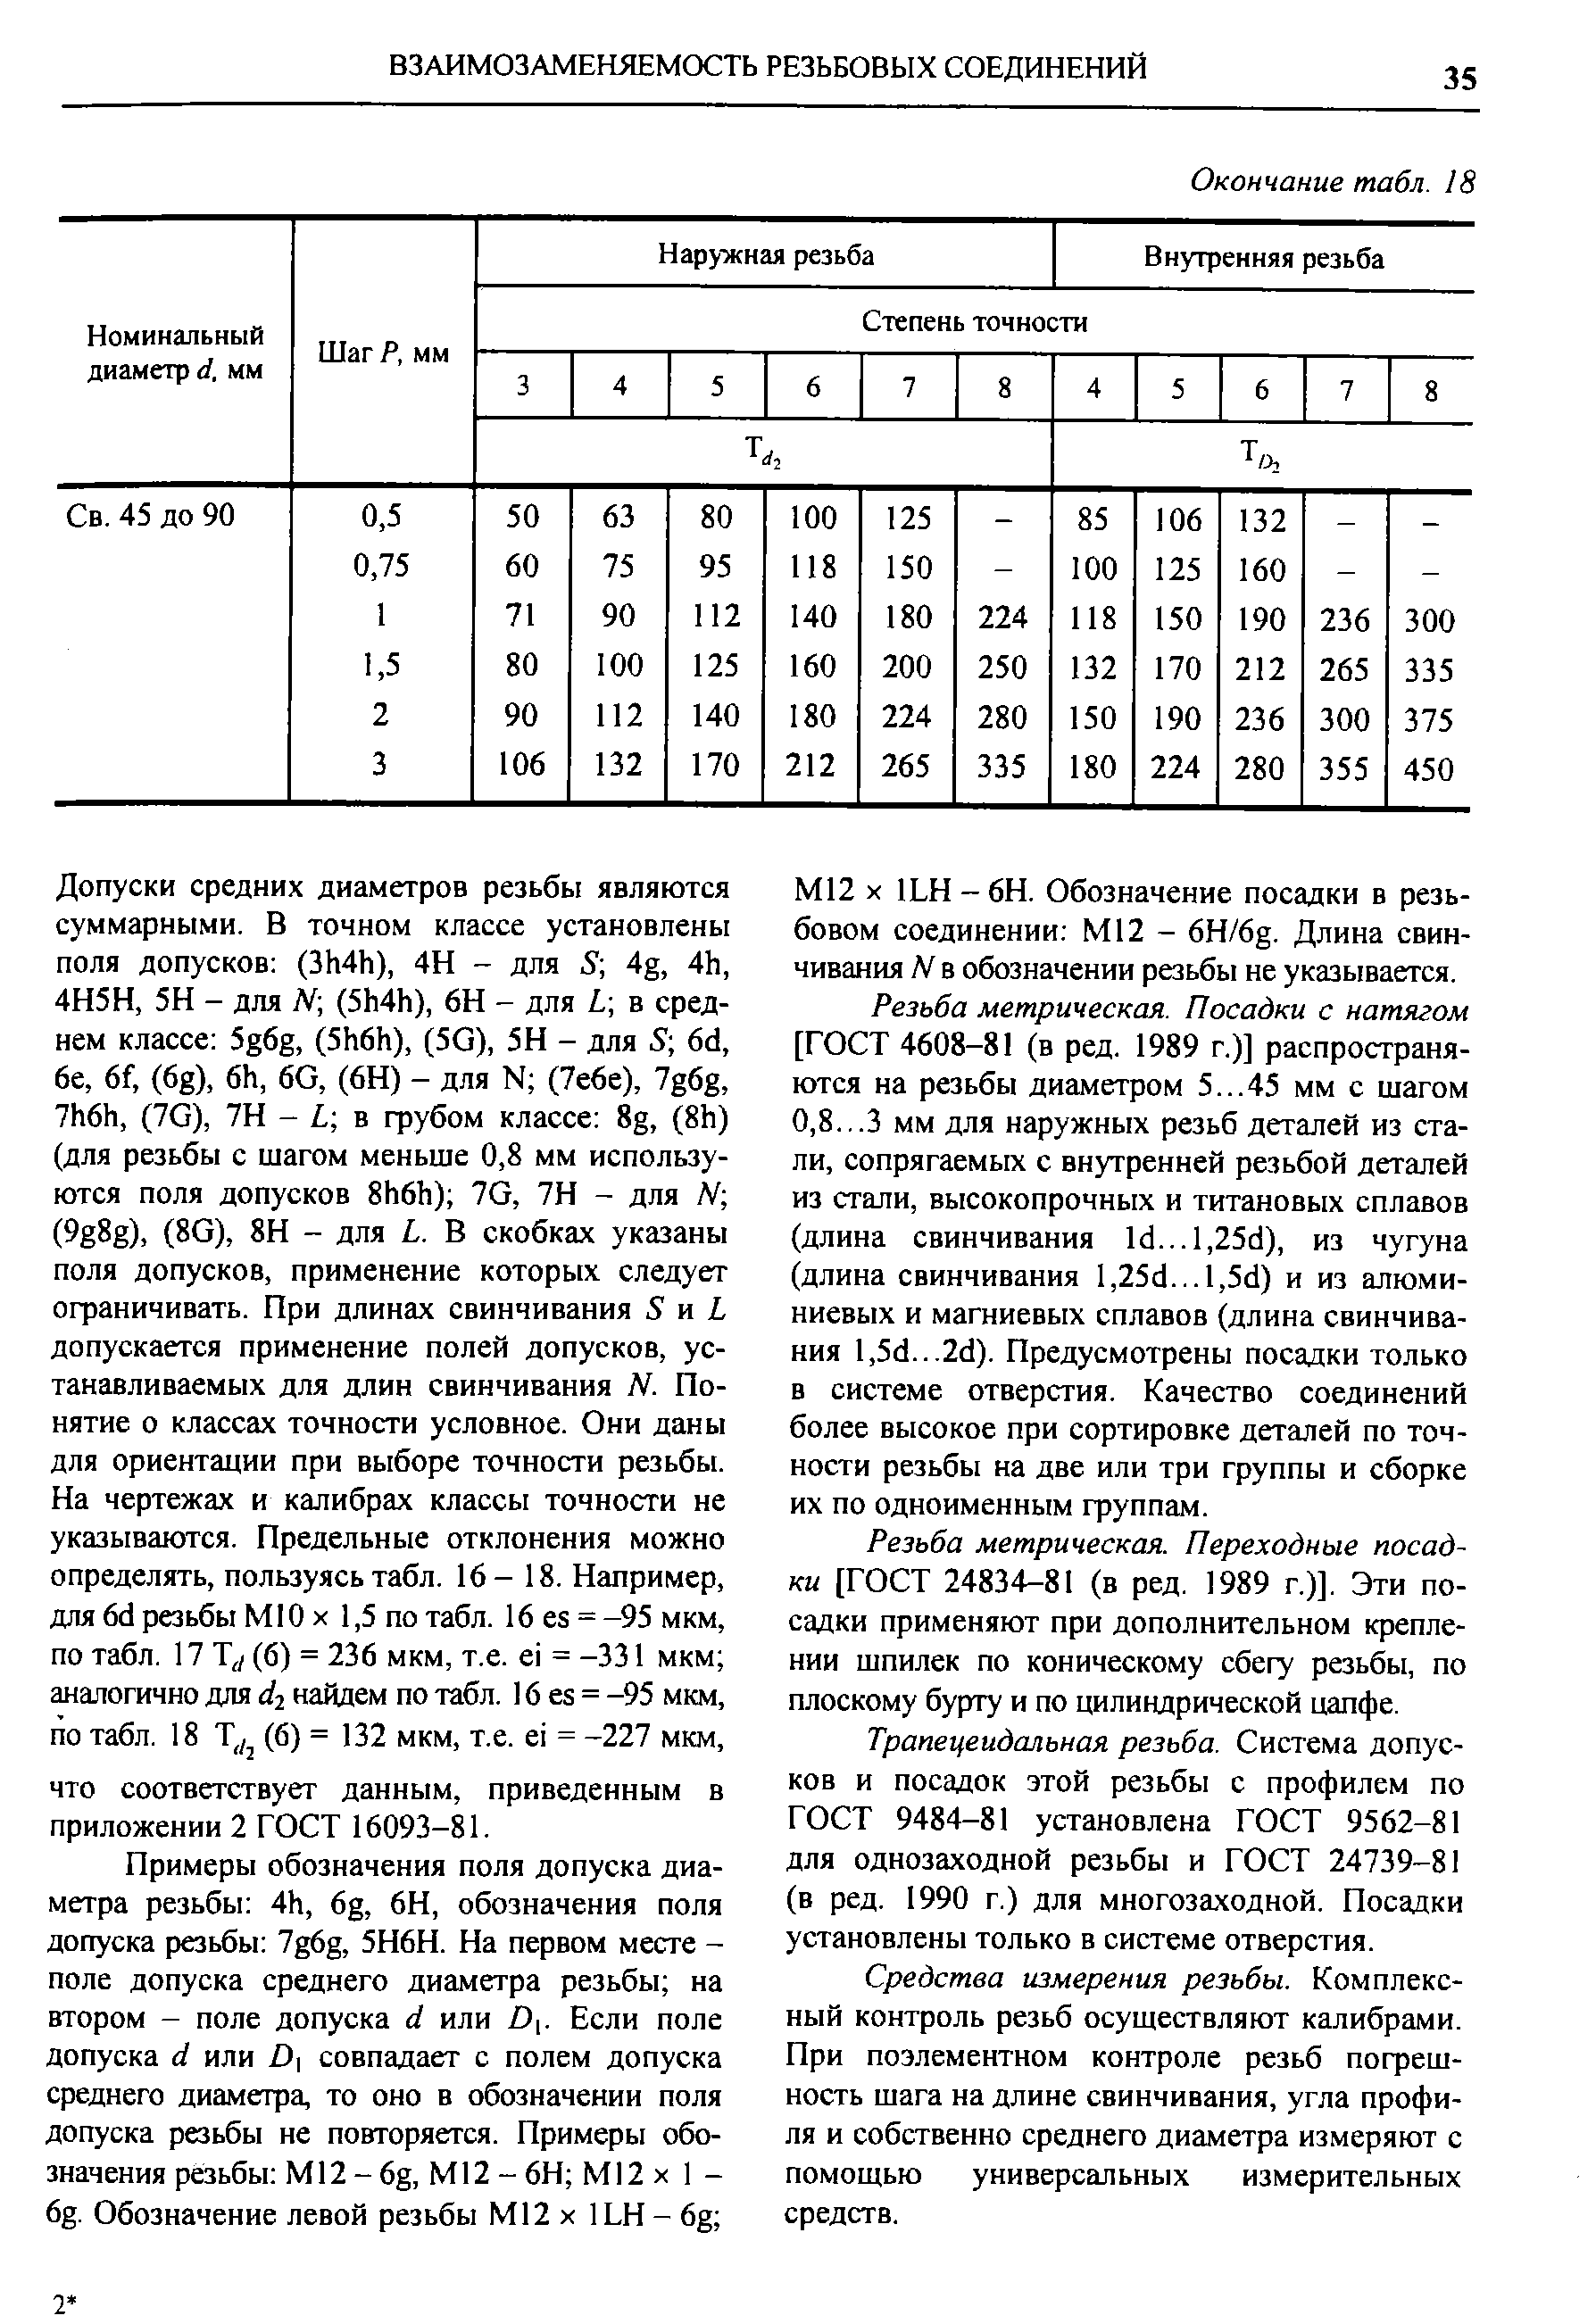 М12 X 1LH - 6Н. Обозначение посадки в резьбовом соединении М12 - 6H/6g. Длина свинчивания N в обозначении резьбы не указывается.
